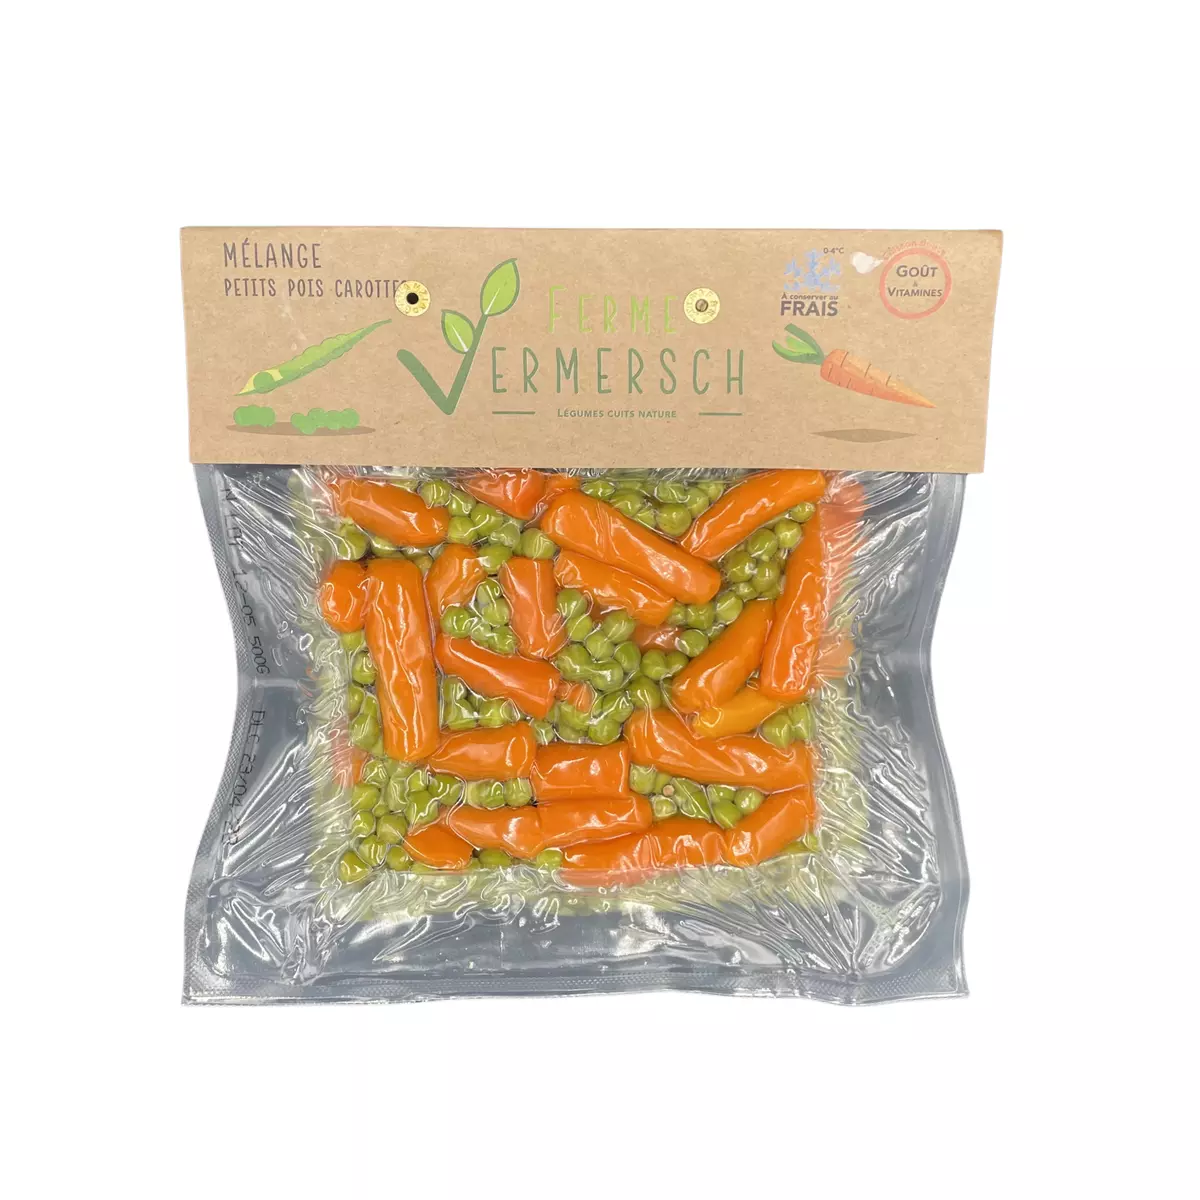 FERME VERMERSCH Mélange petits pois carottes 450g